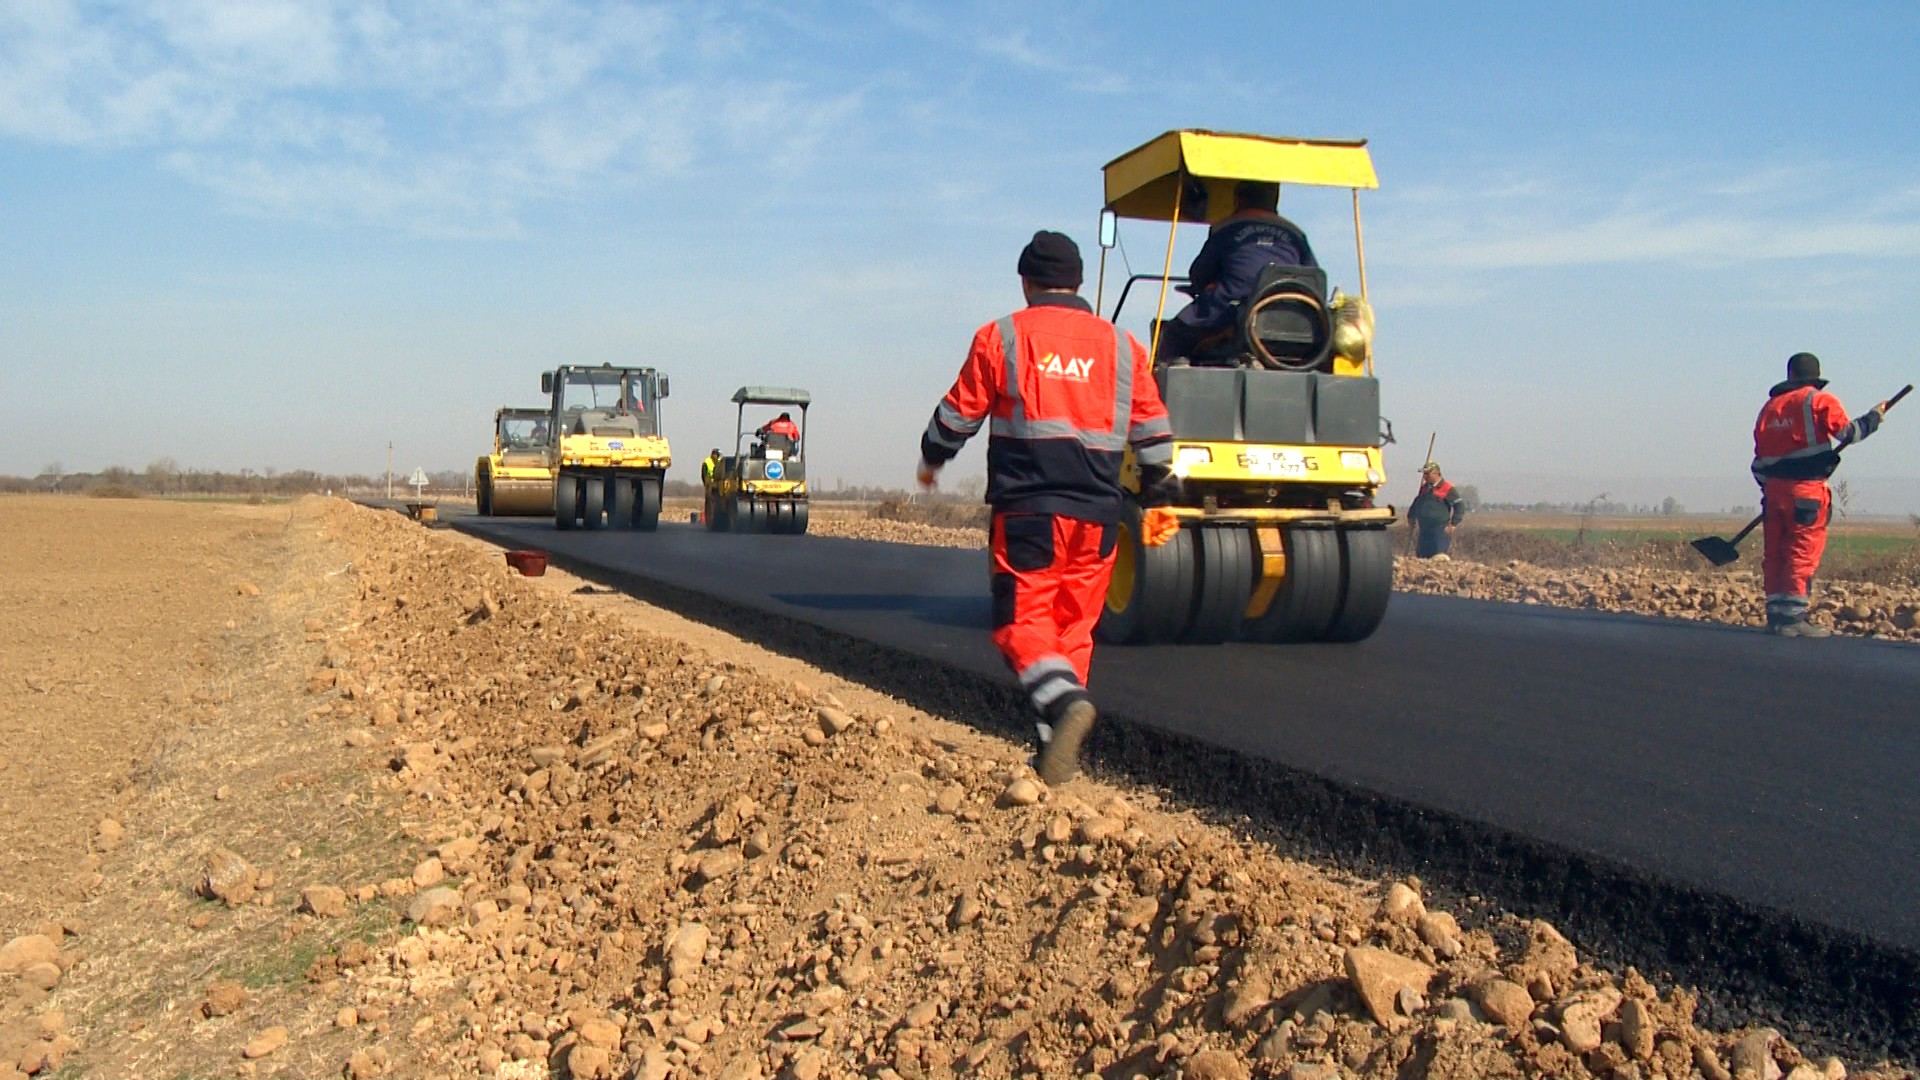 В Товузе начата реконструкция дорог ряда населенных пунктов (ФОТО)